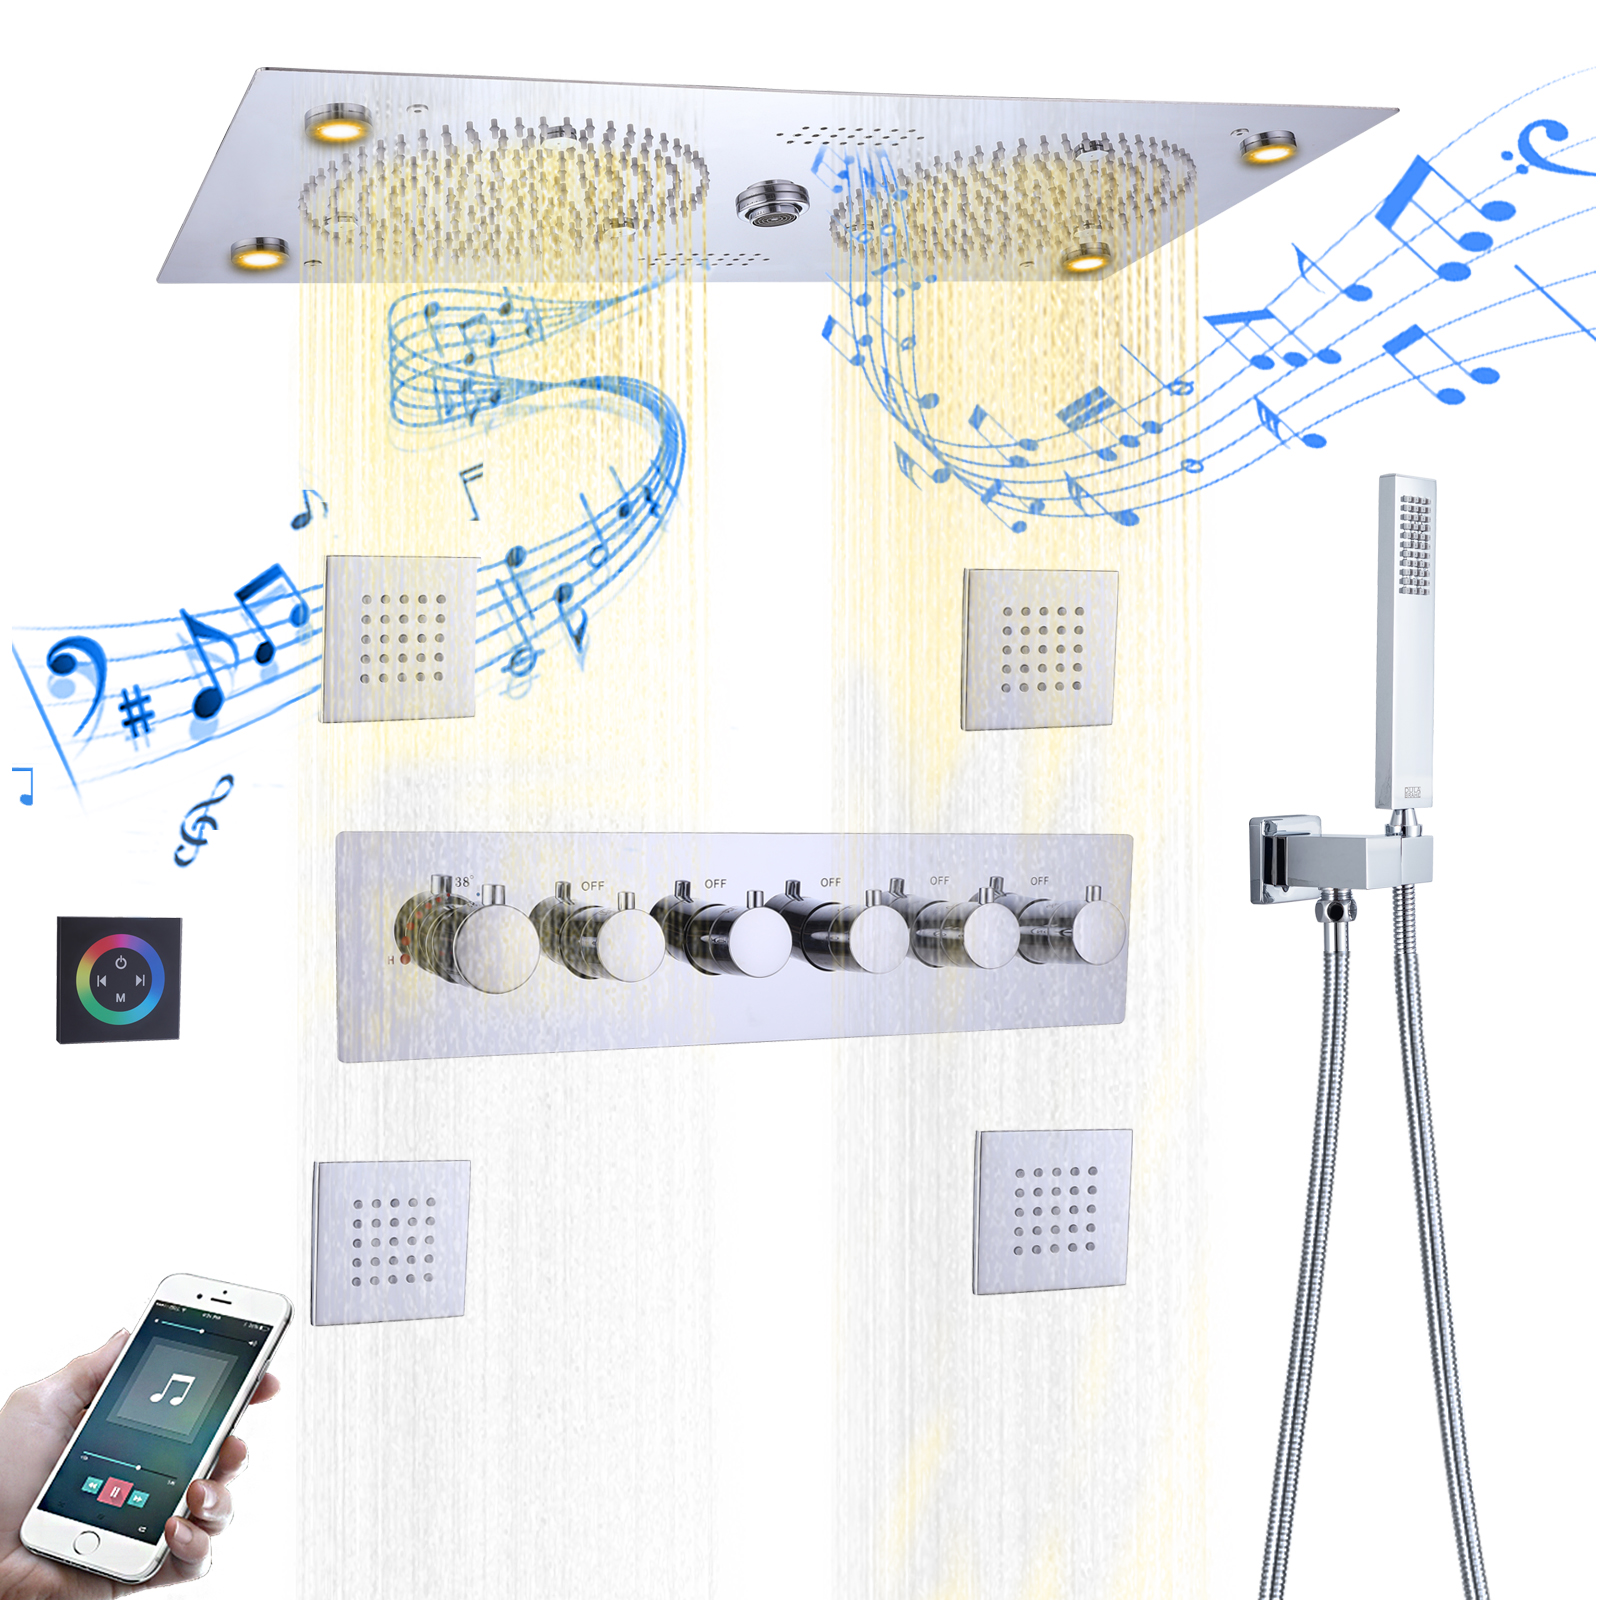 مجموعة صنبور الدش الترموستاتي المصقول بالكروم LED للحمام مع ميزات الموسيقى ونظام الدش النحاسي المحمول